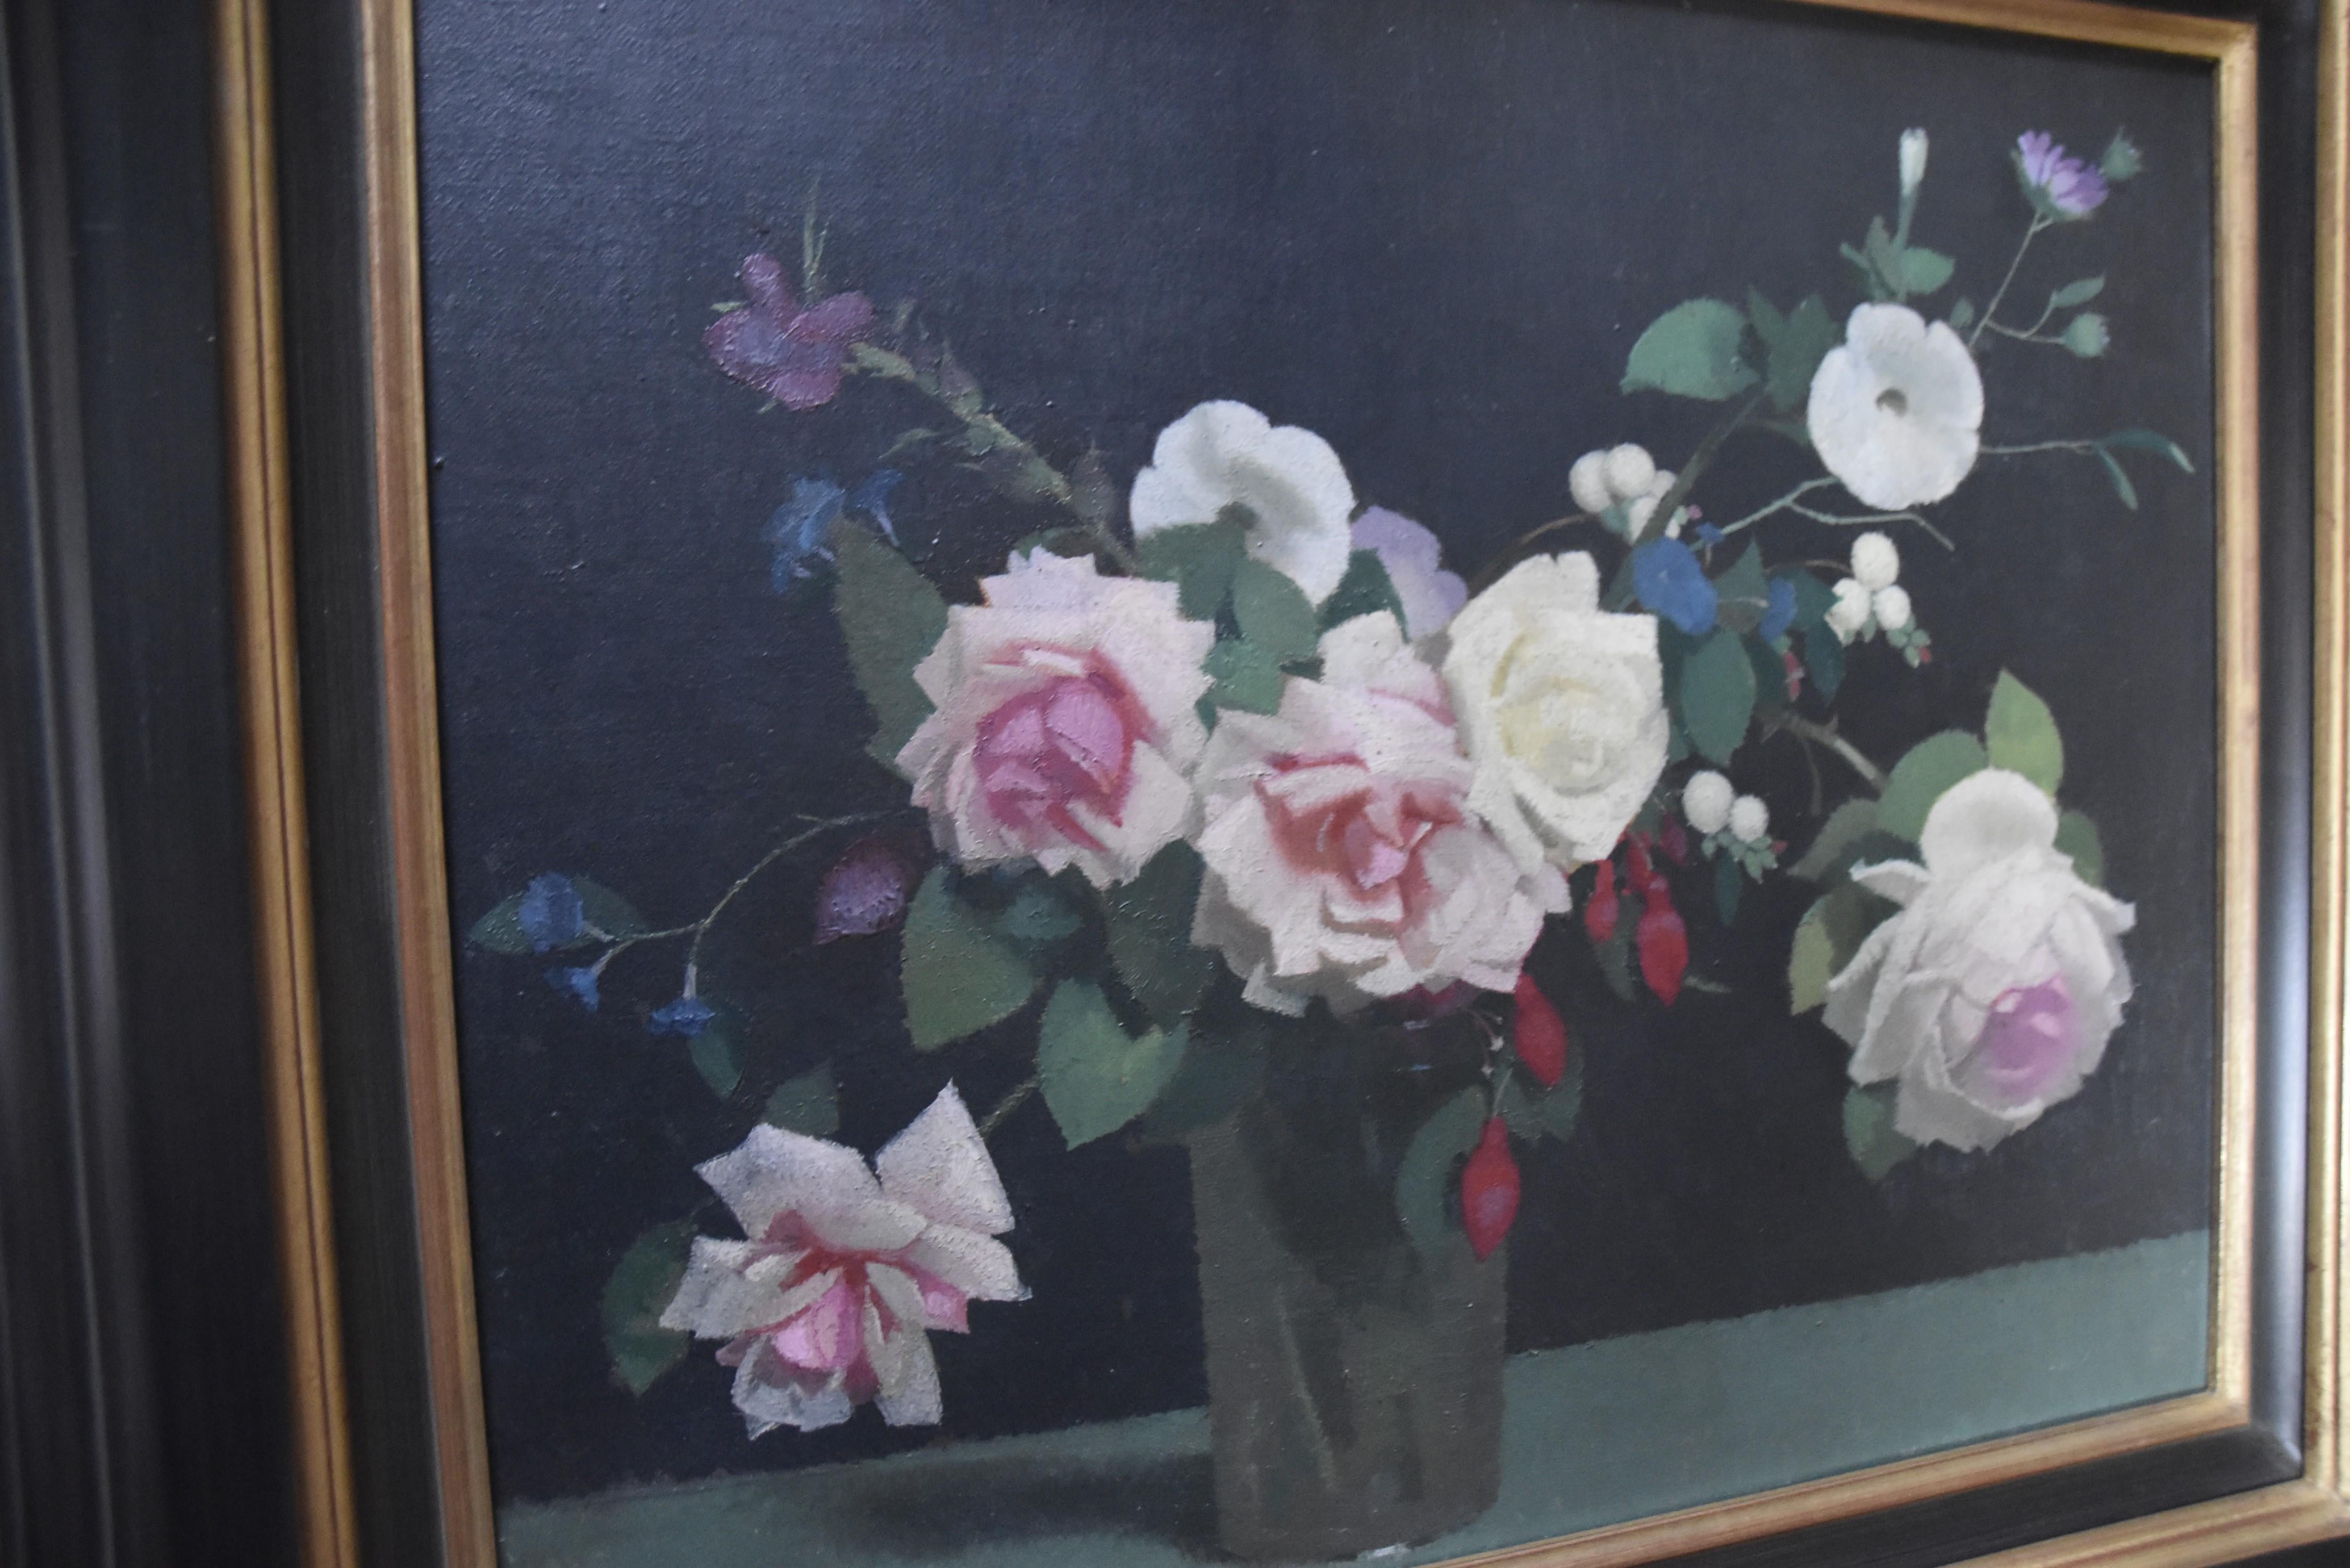 Lucien-Victor Guirand de Scevola (1871-1950) 
Ein Blumenstrauß 
Öl auf Leinwand
Signiert oben links 
38 x 46 cm
In einem schönen modernen Rahmen: 53 x 61 cm

Lucien Victor Guirand de Scévola malte besonders gern Blumen. Seine Blumensträuße sind auch